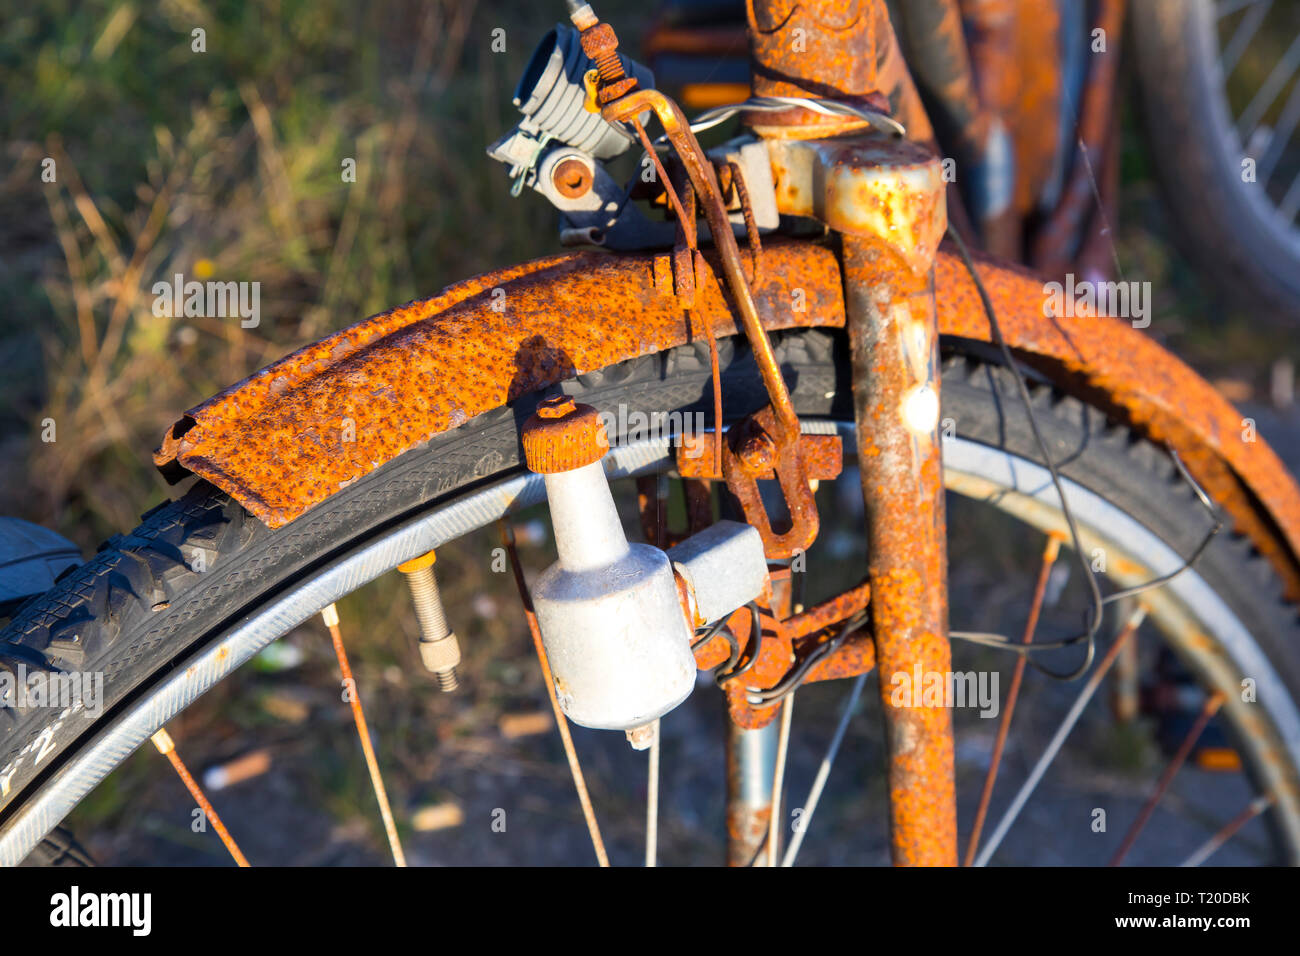 Rostiges Fahrrad, alle Teile, Metall, Rost kann vorgenommen werden, ist mit rotem Rost bedeckt, Stockfoto